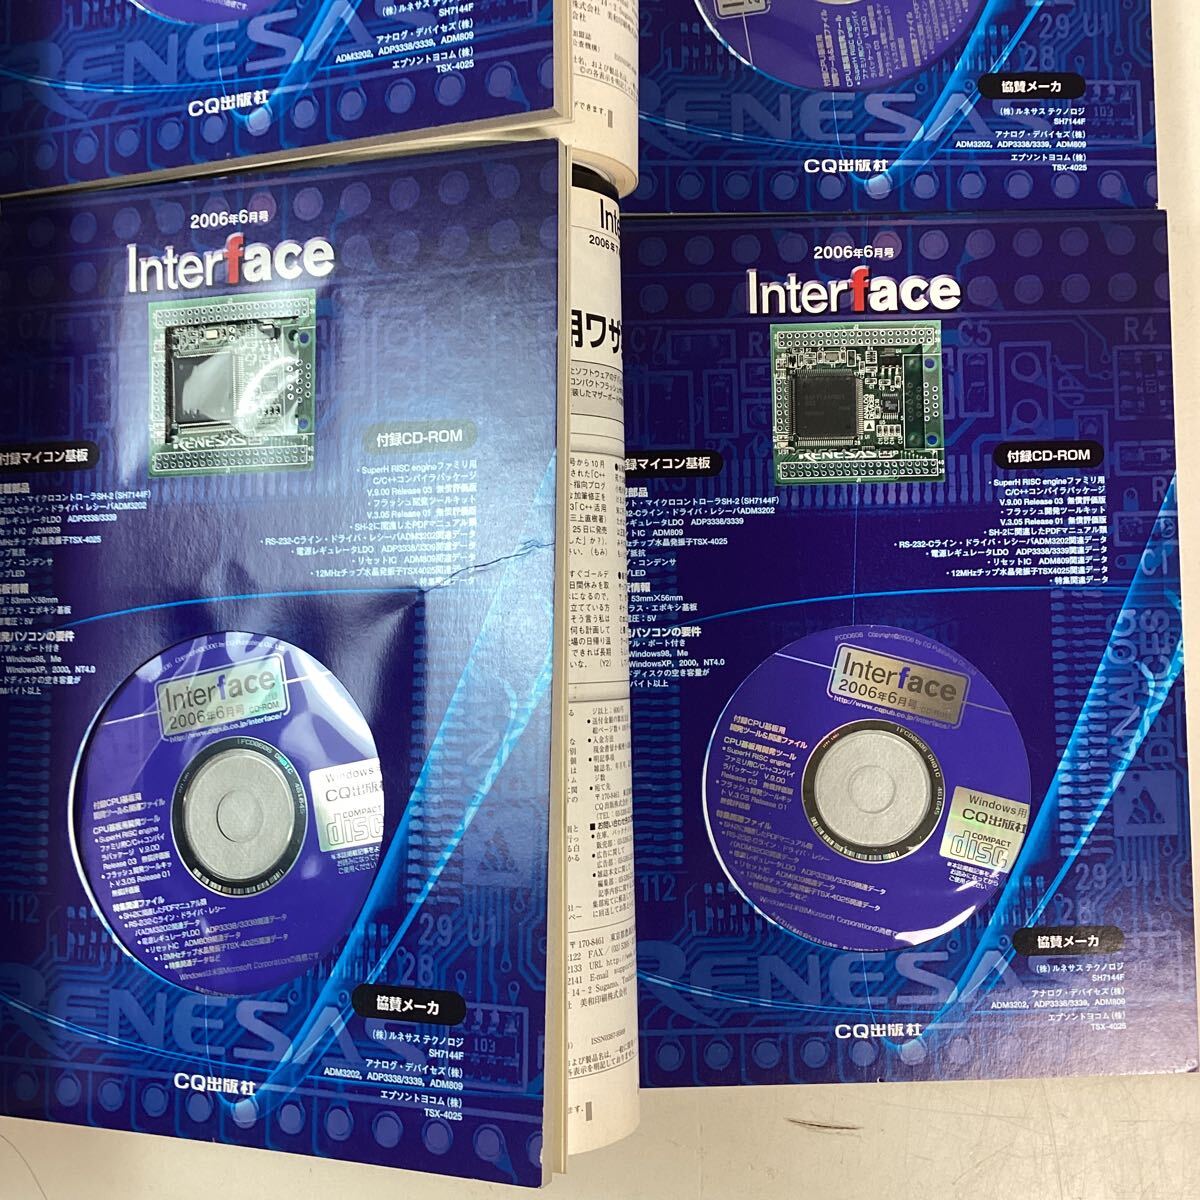 y4249 Interface 2009年 6月号 4冊まとめ SH-2 マイコン基板 + CD-ROM 付属 インターフェース マイコン 開発 CPU基板 中古の画像8